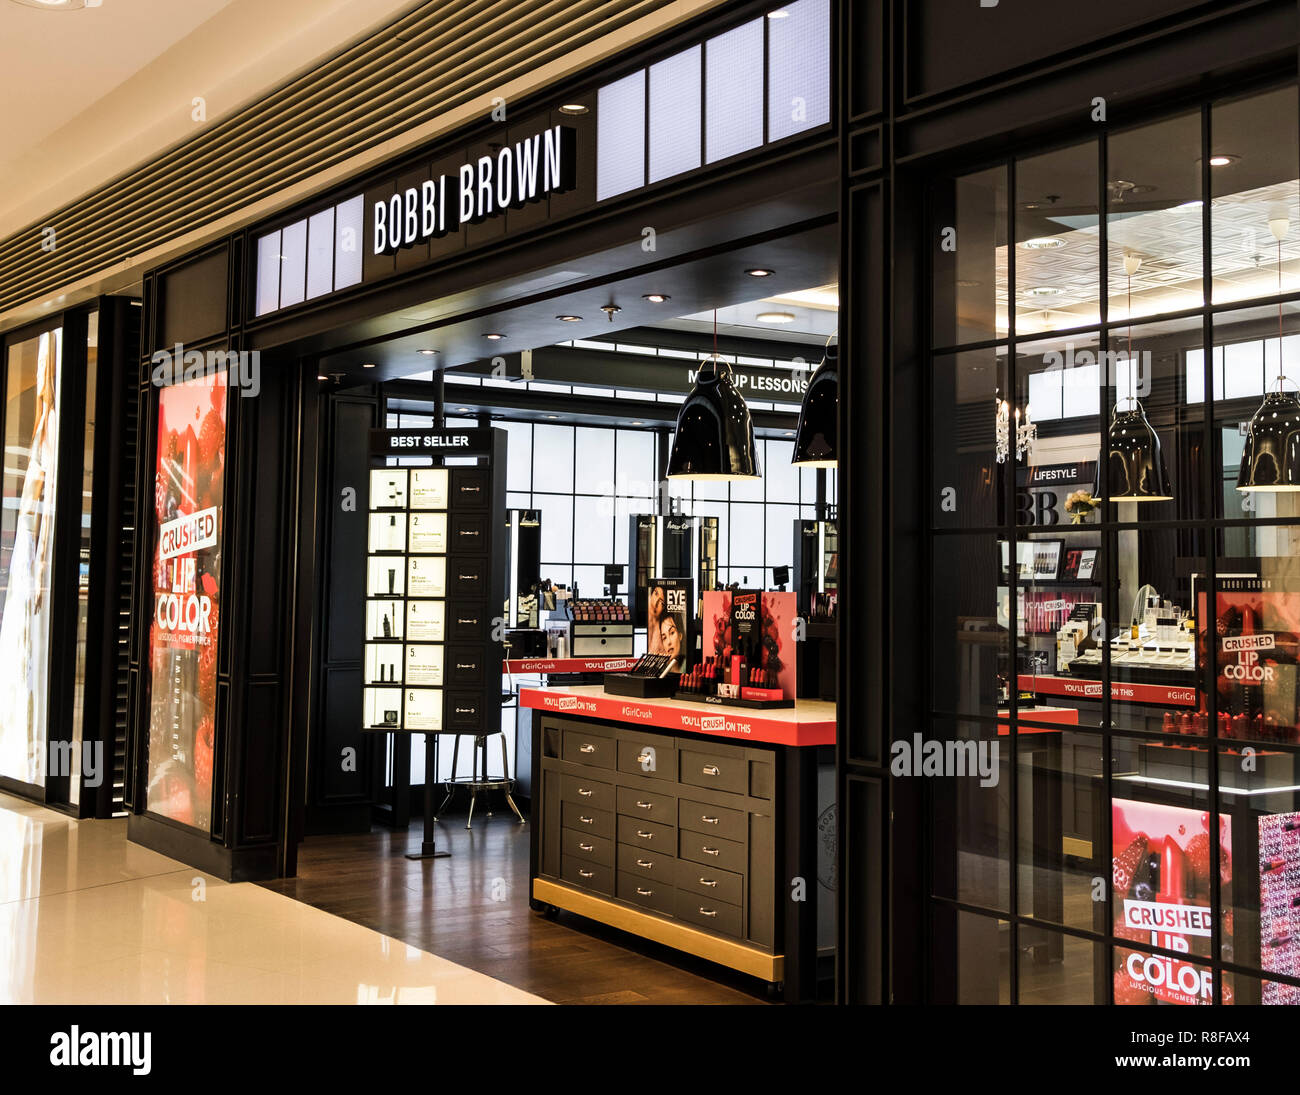 Hong Kong, April 7, 2019: Bobbi Brown store in Hong Kong. Stock Photo